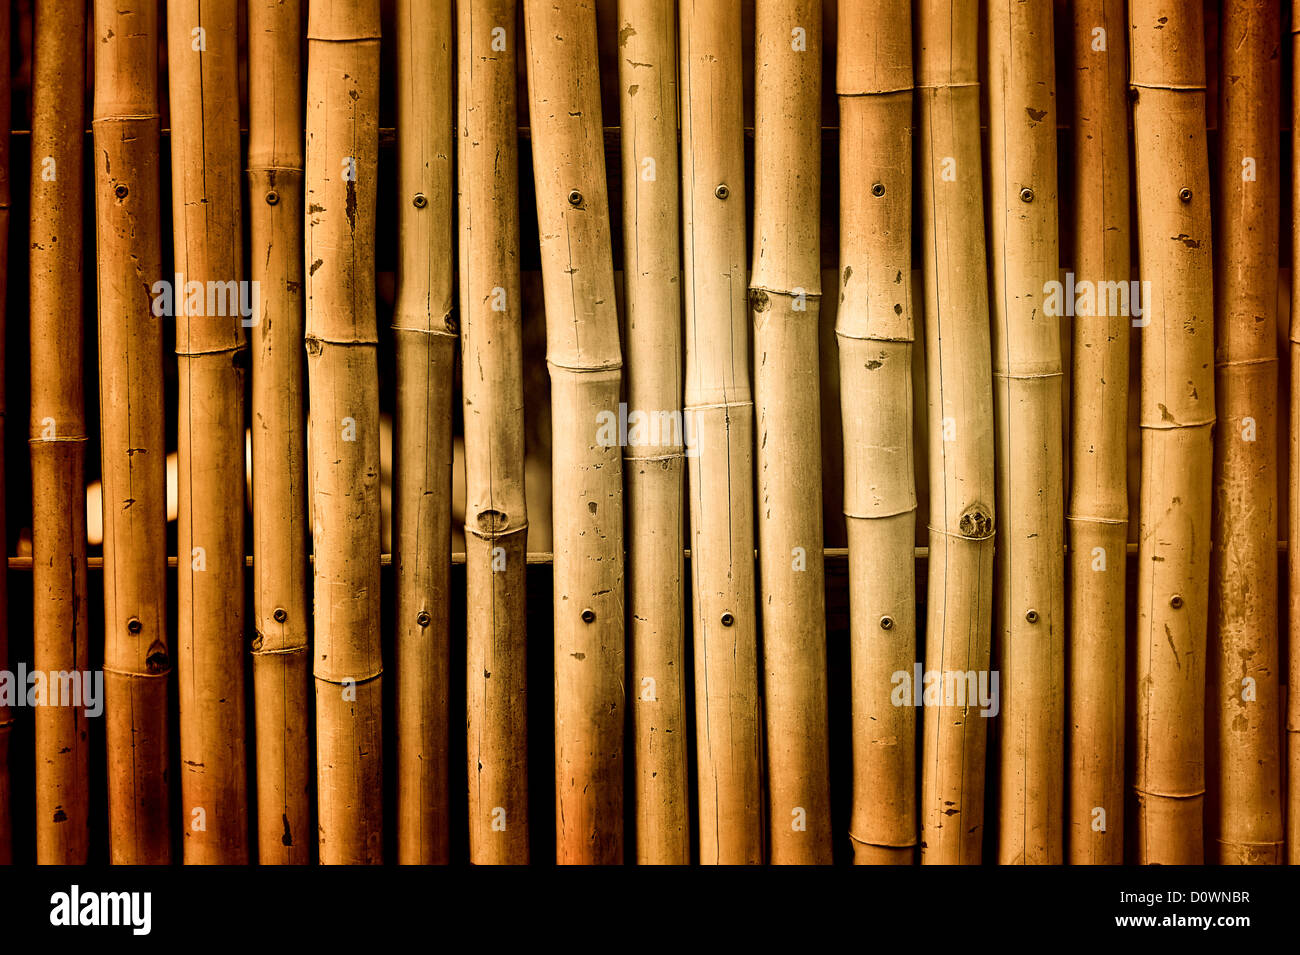 Vintage bamboo background Stock Photo - Alamy